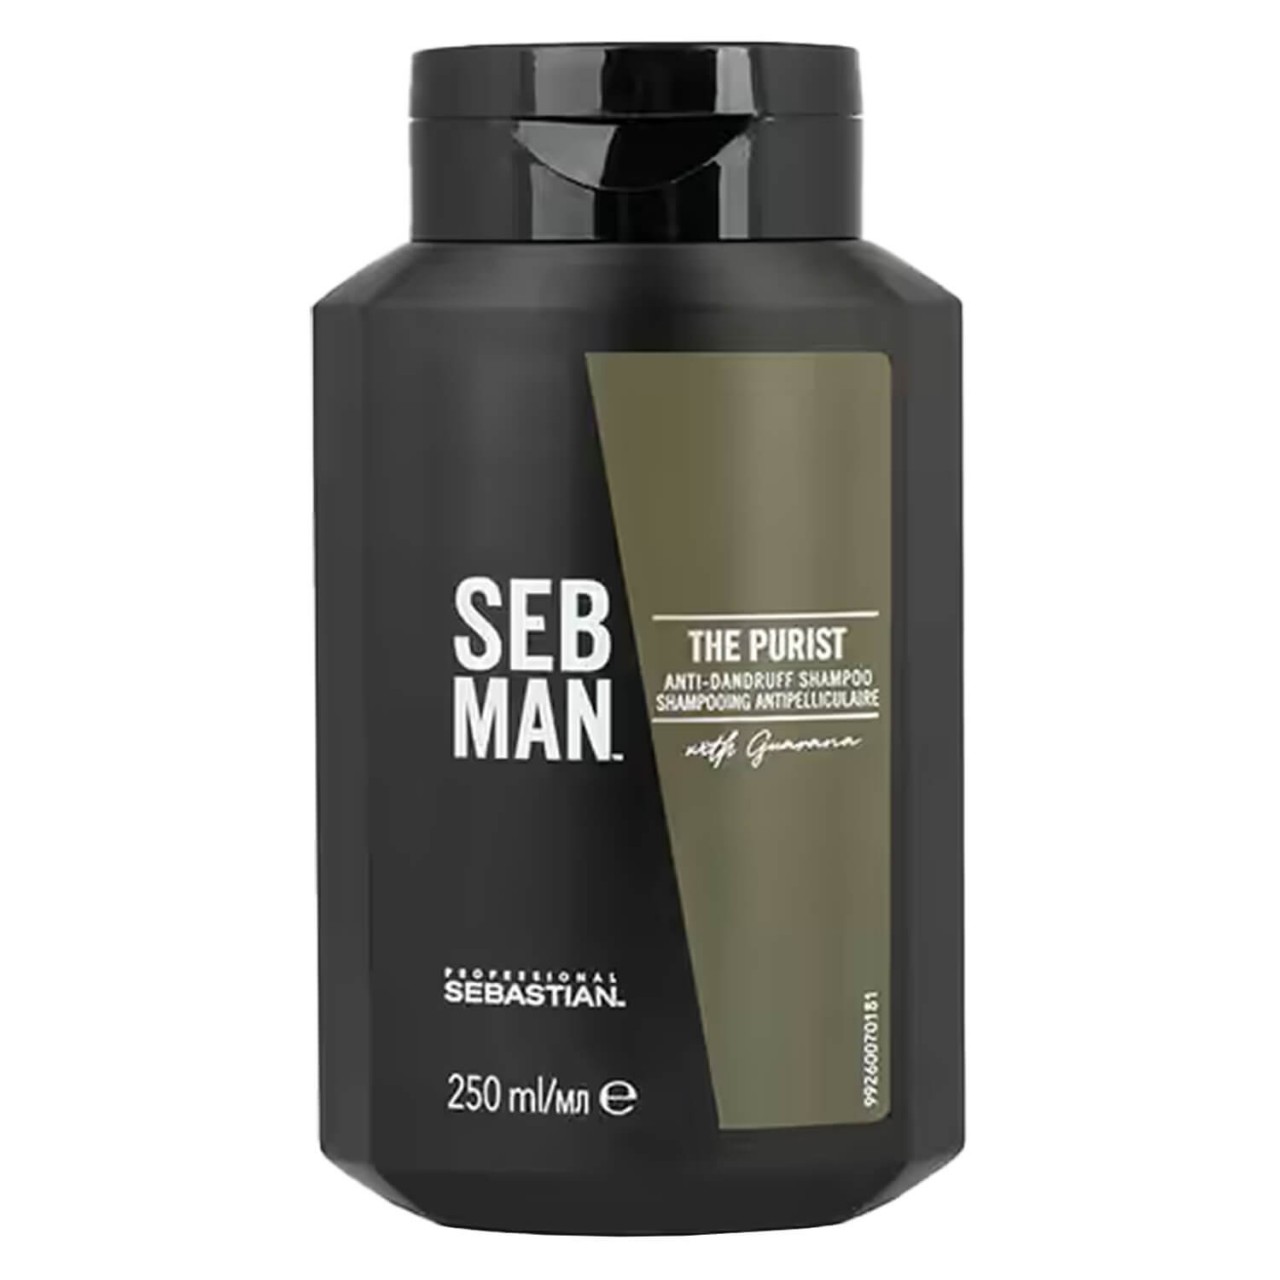 SEB MAN - The Purist Anti-Dandruff Shampoo von Sebastian